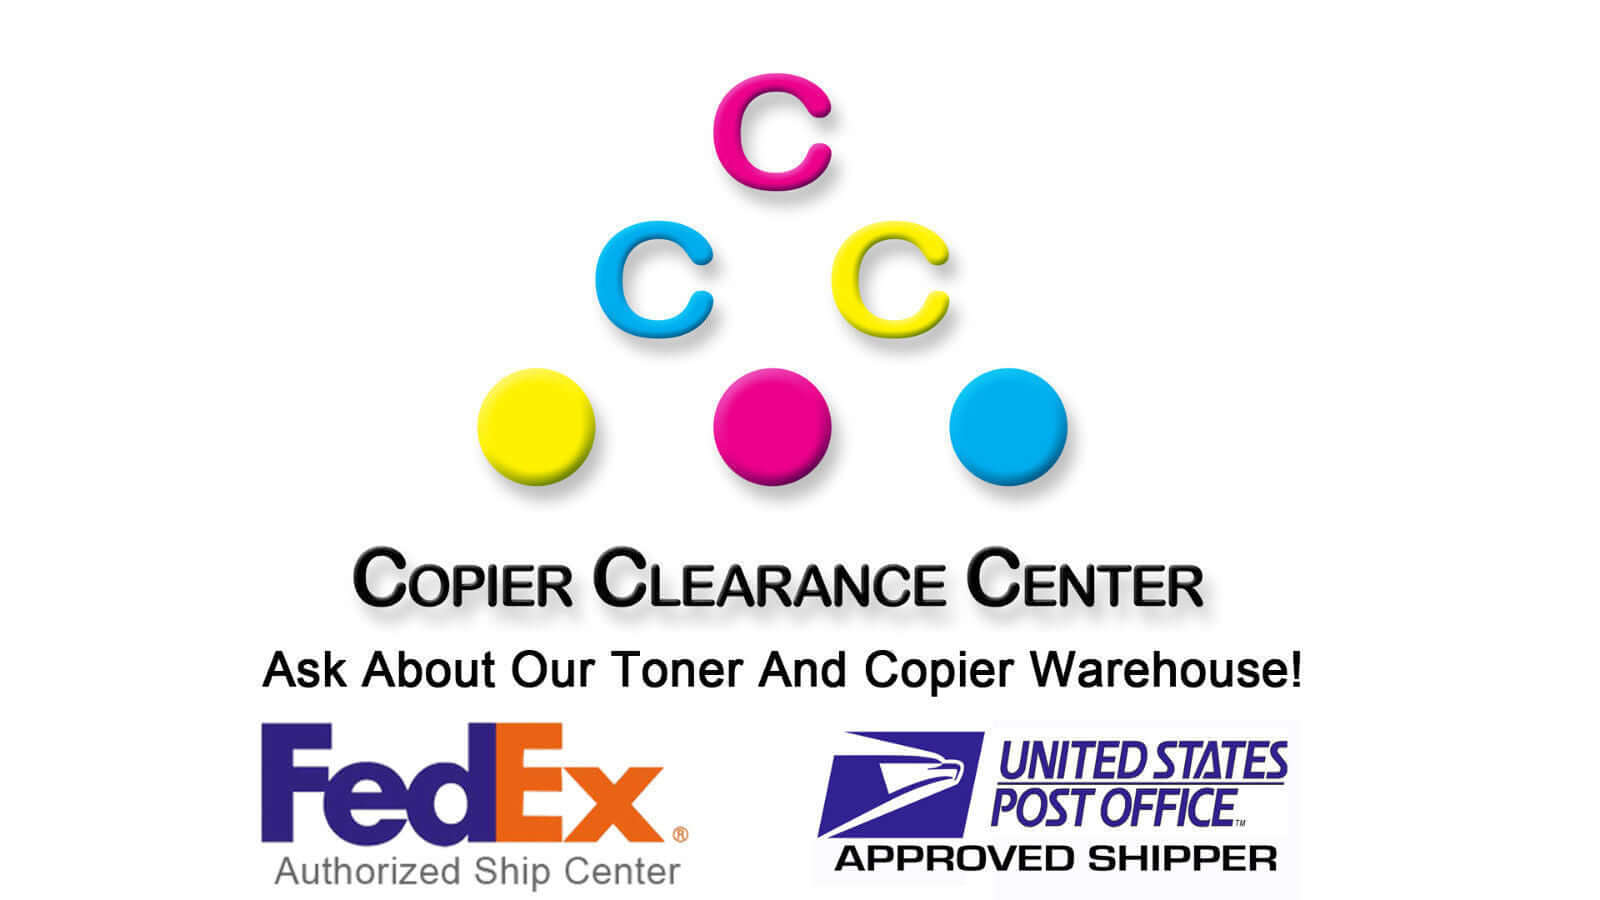 Open Kyocera Copystar TK-6729 Toner Black CS7002i/7003i/8002i/8003i/9002i/9003i - copier-clearance-center